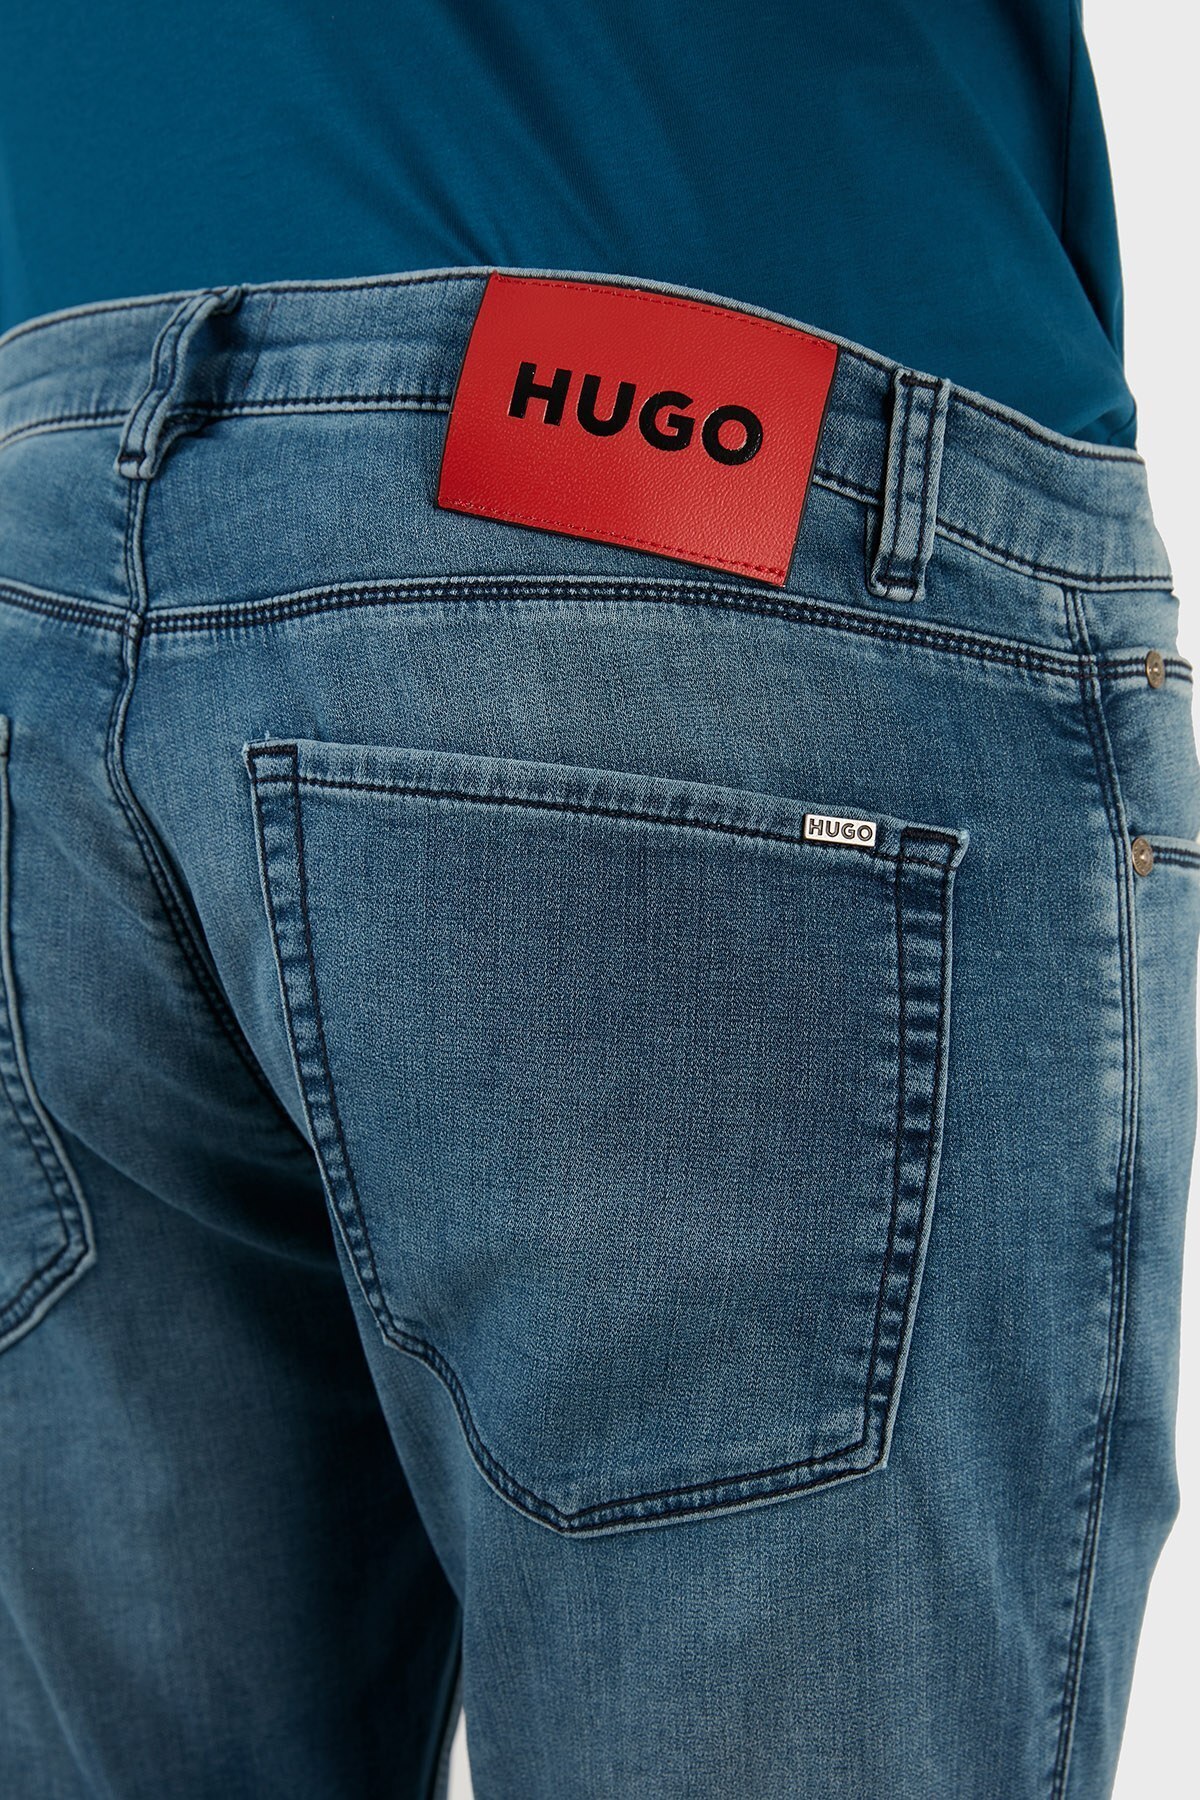 Hugo Pamuklu Ekstra Slim Fit Cepli Jeans Erkek Kot Pantolon 50467423 410 LACİVERT